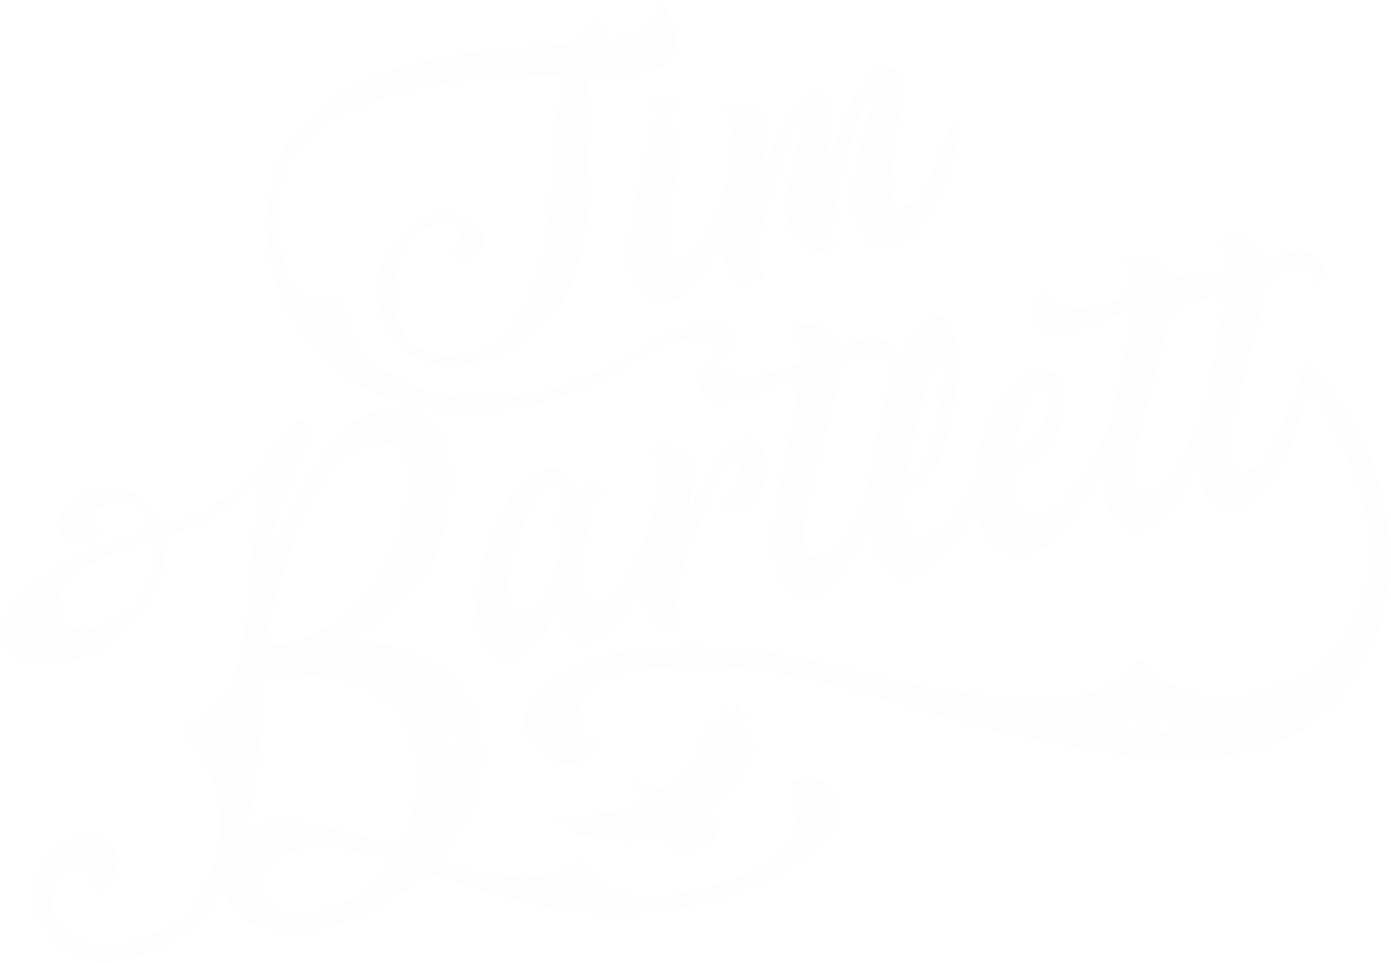 Tim Bartlett